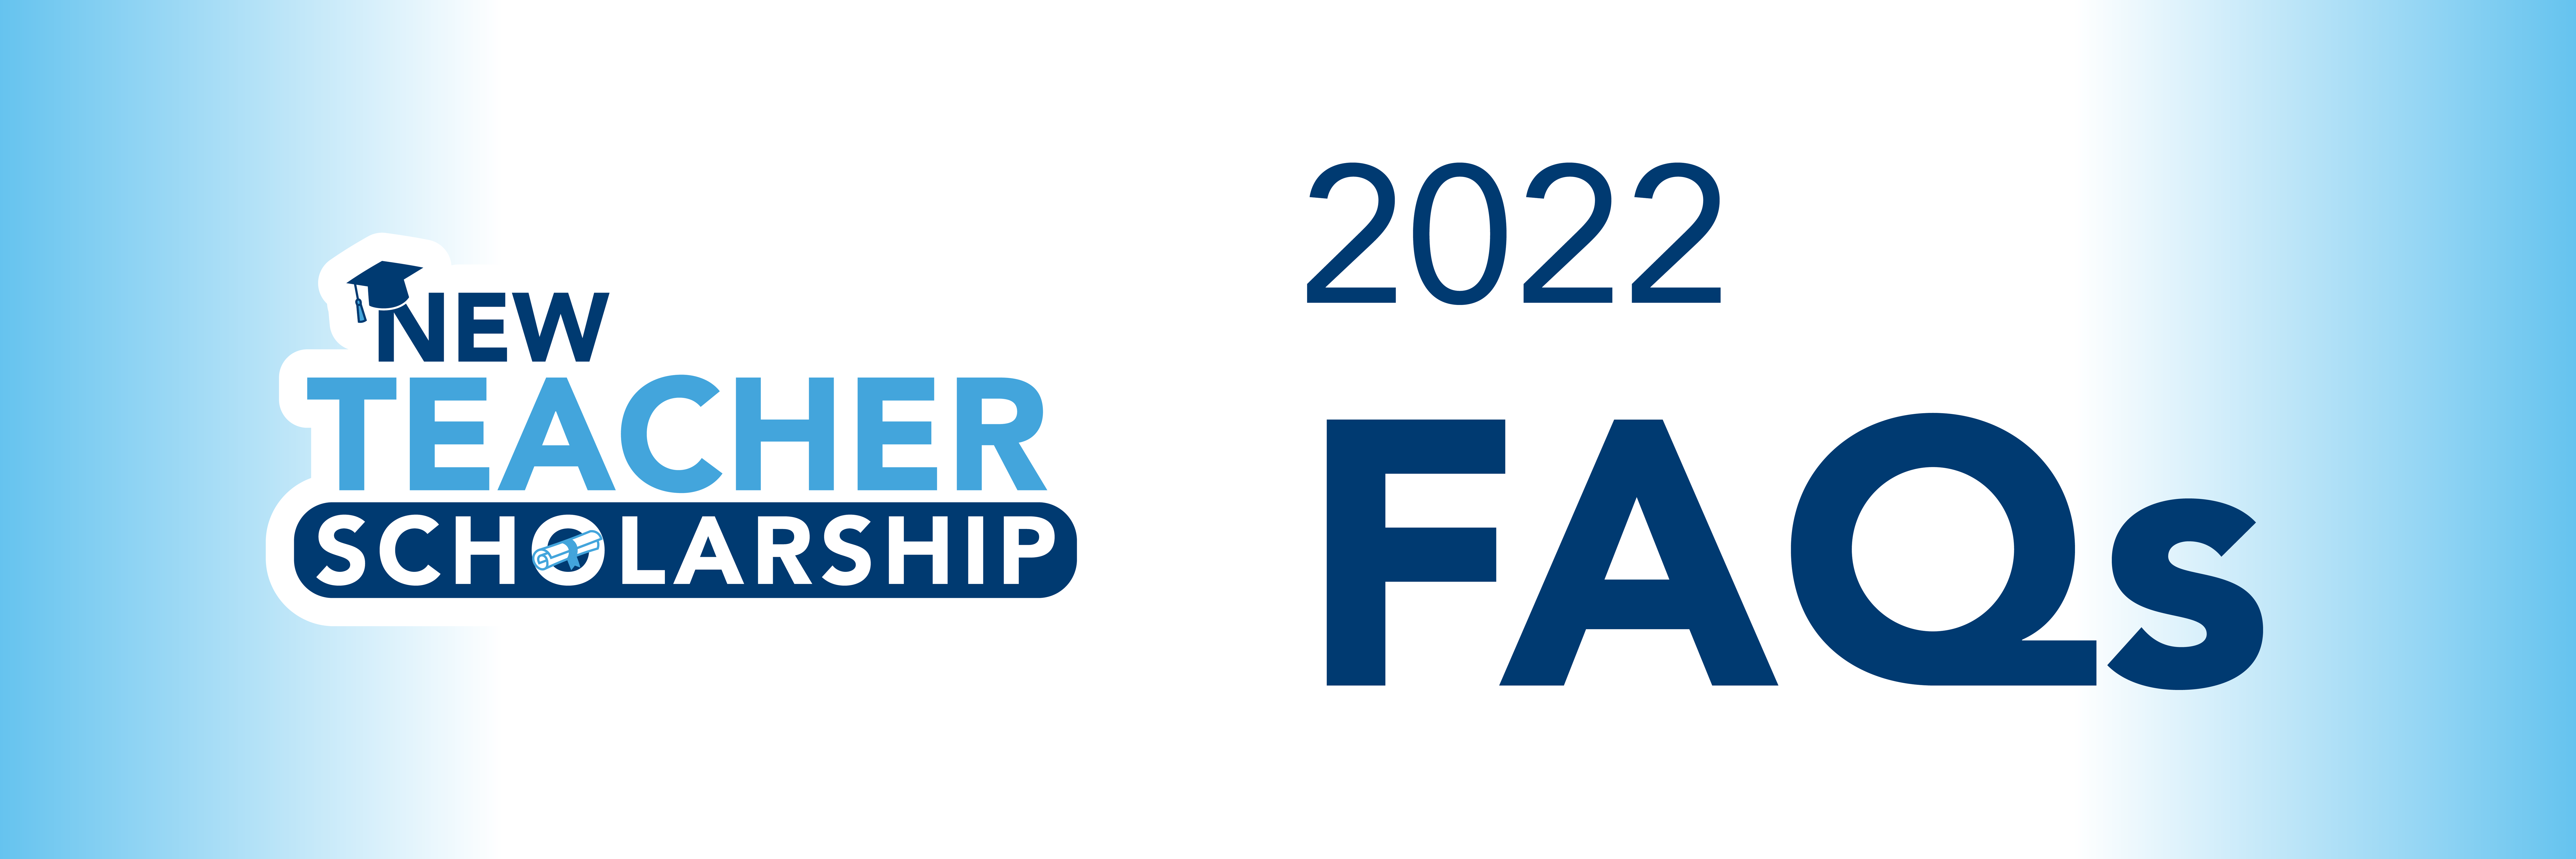 New Teacher Scholarship 2022 FAQs